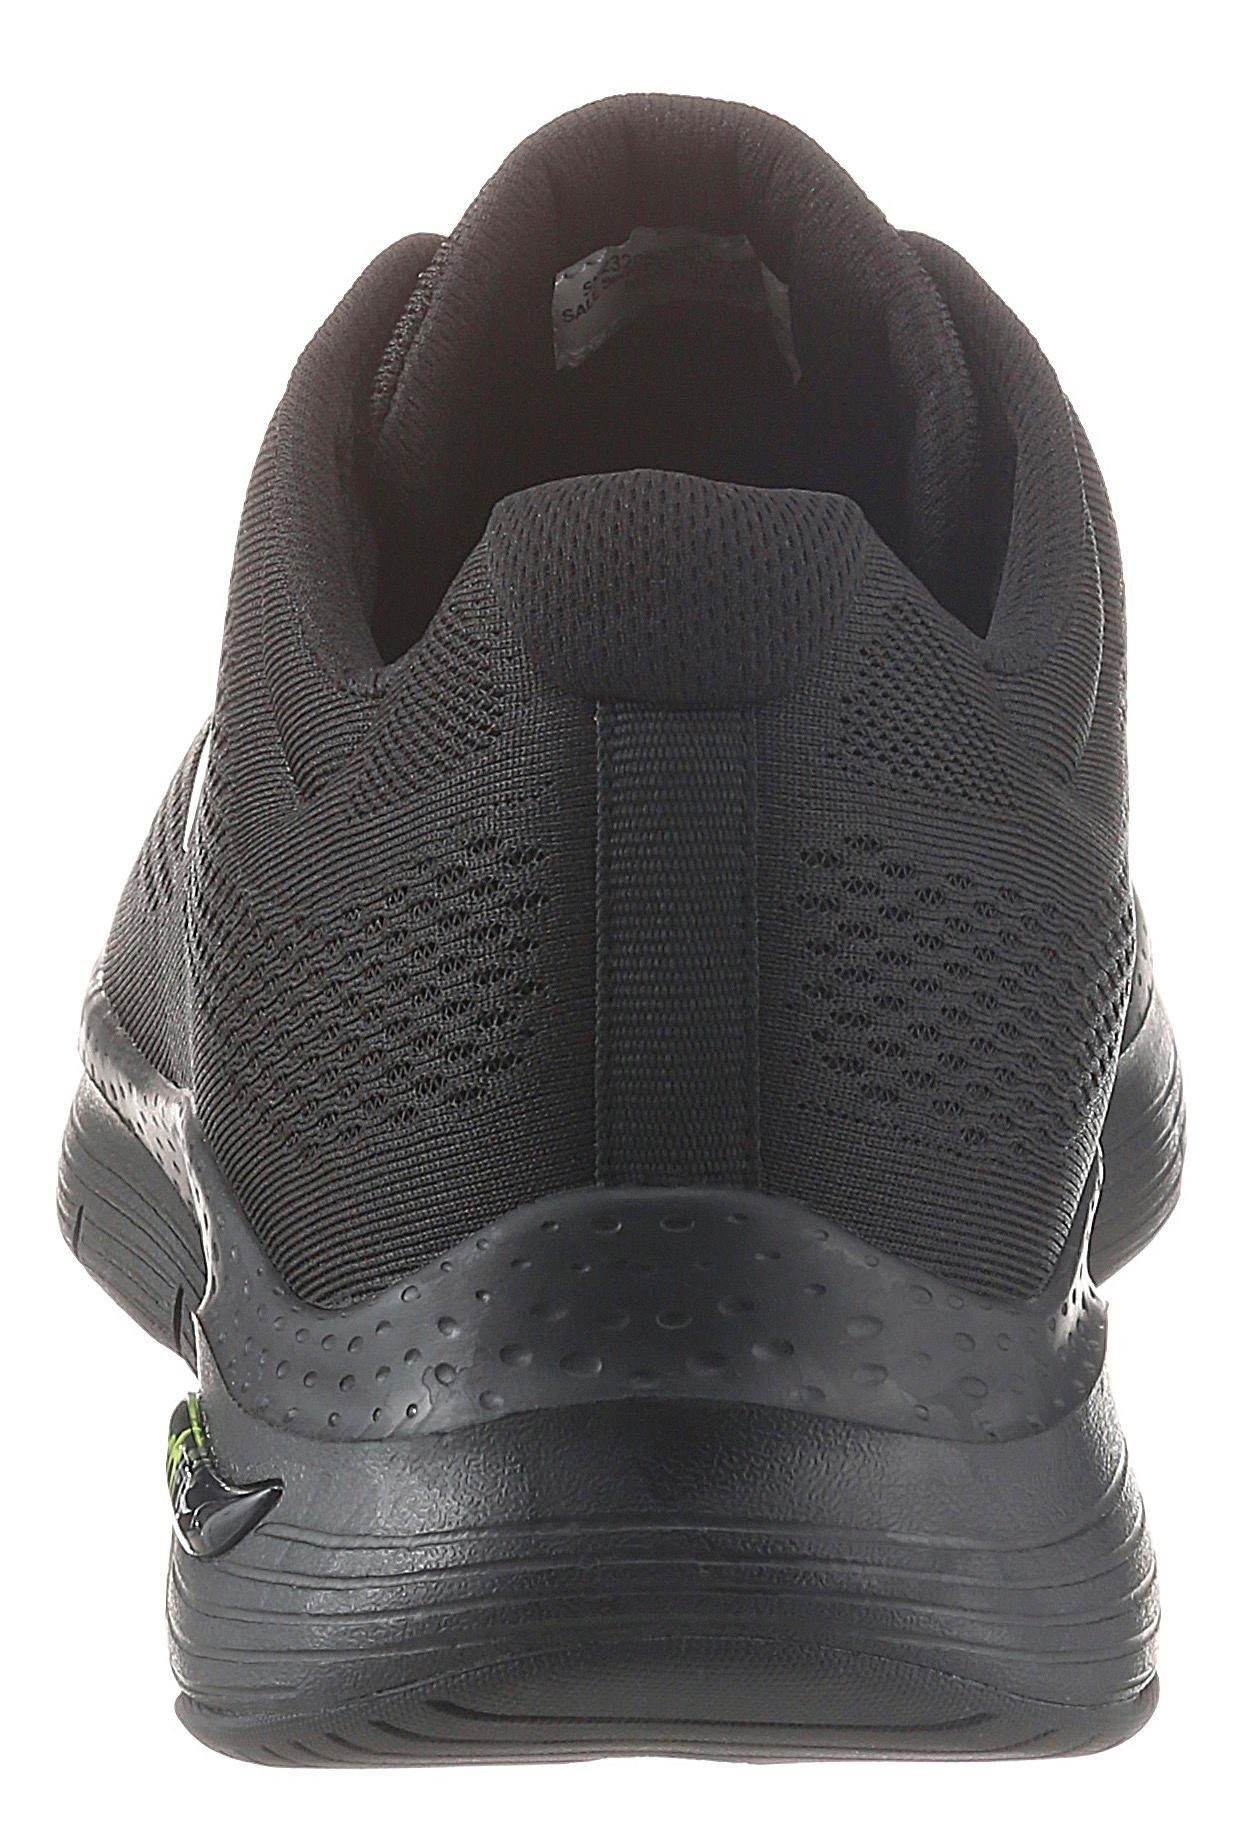 Skechers Arch Fit mit Fit-Funktion komfortabler schwarz Sneaker Arch